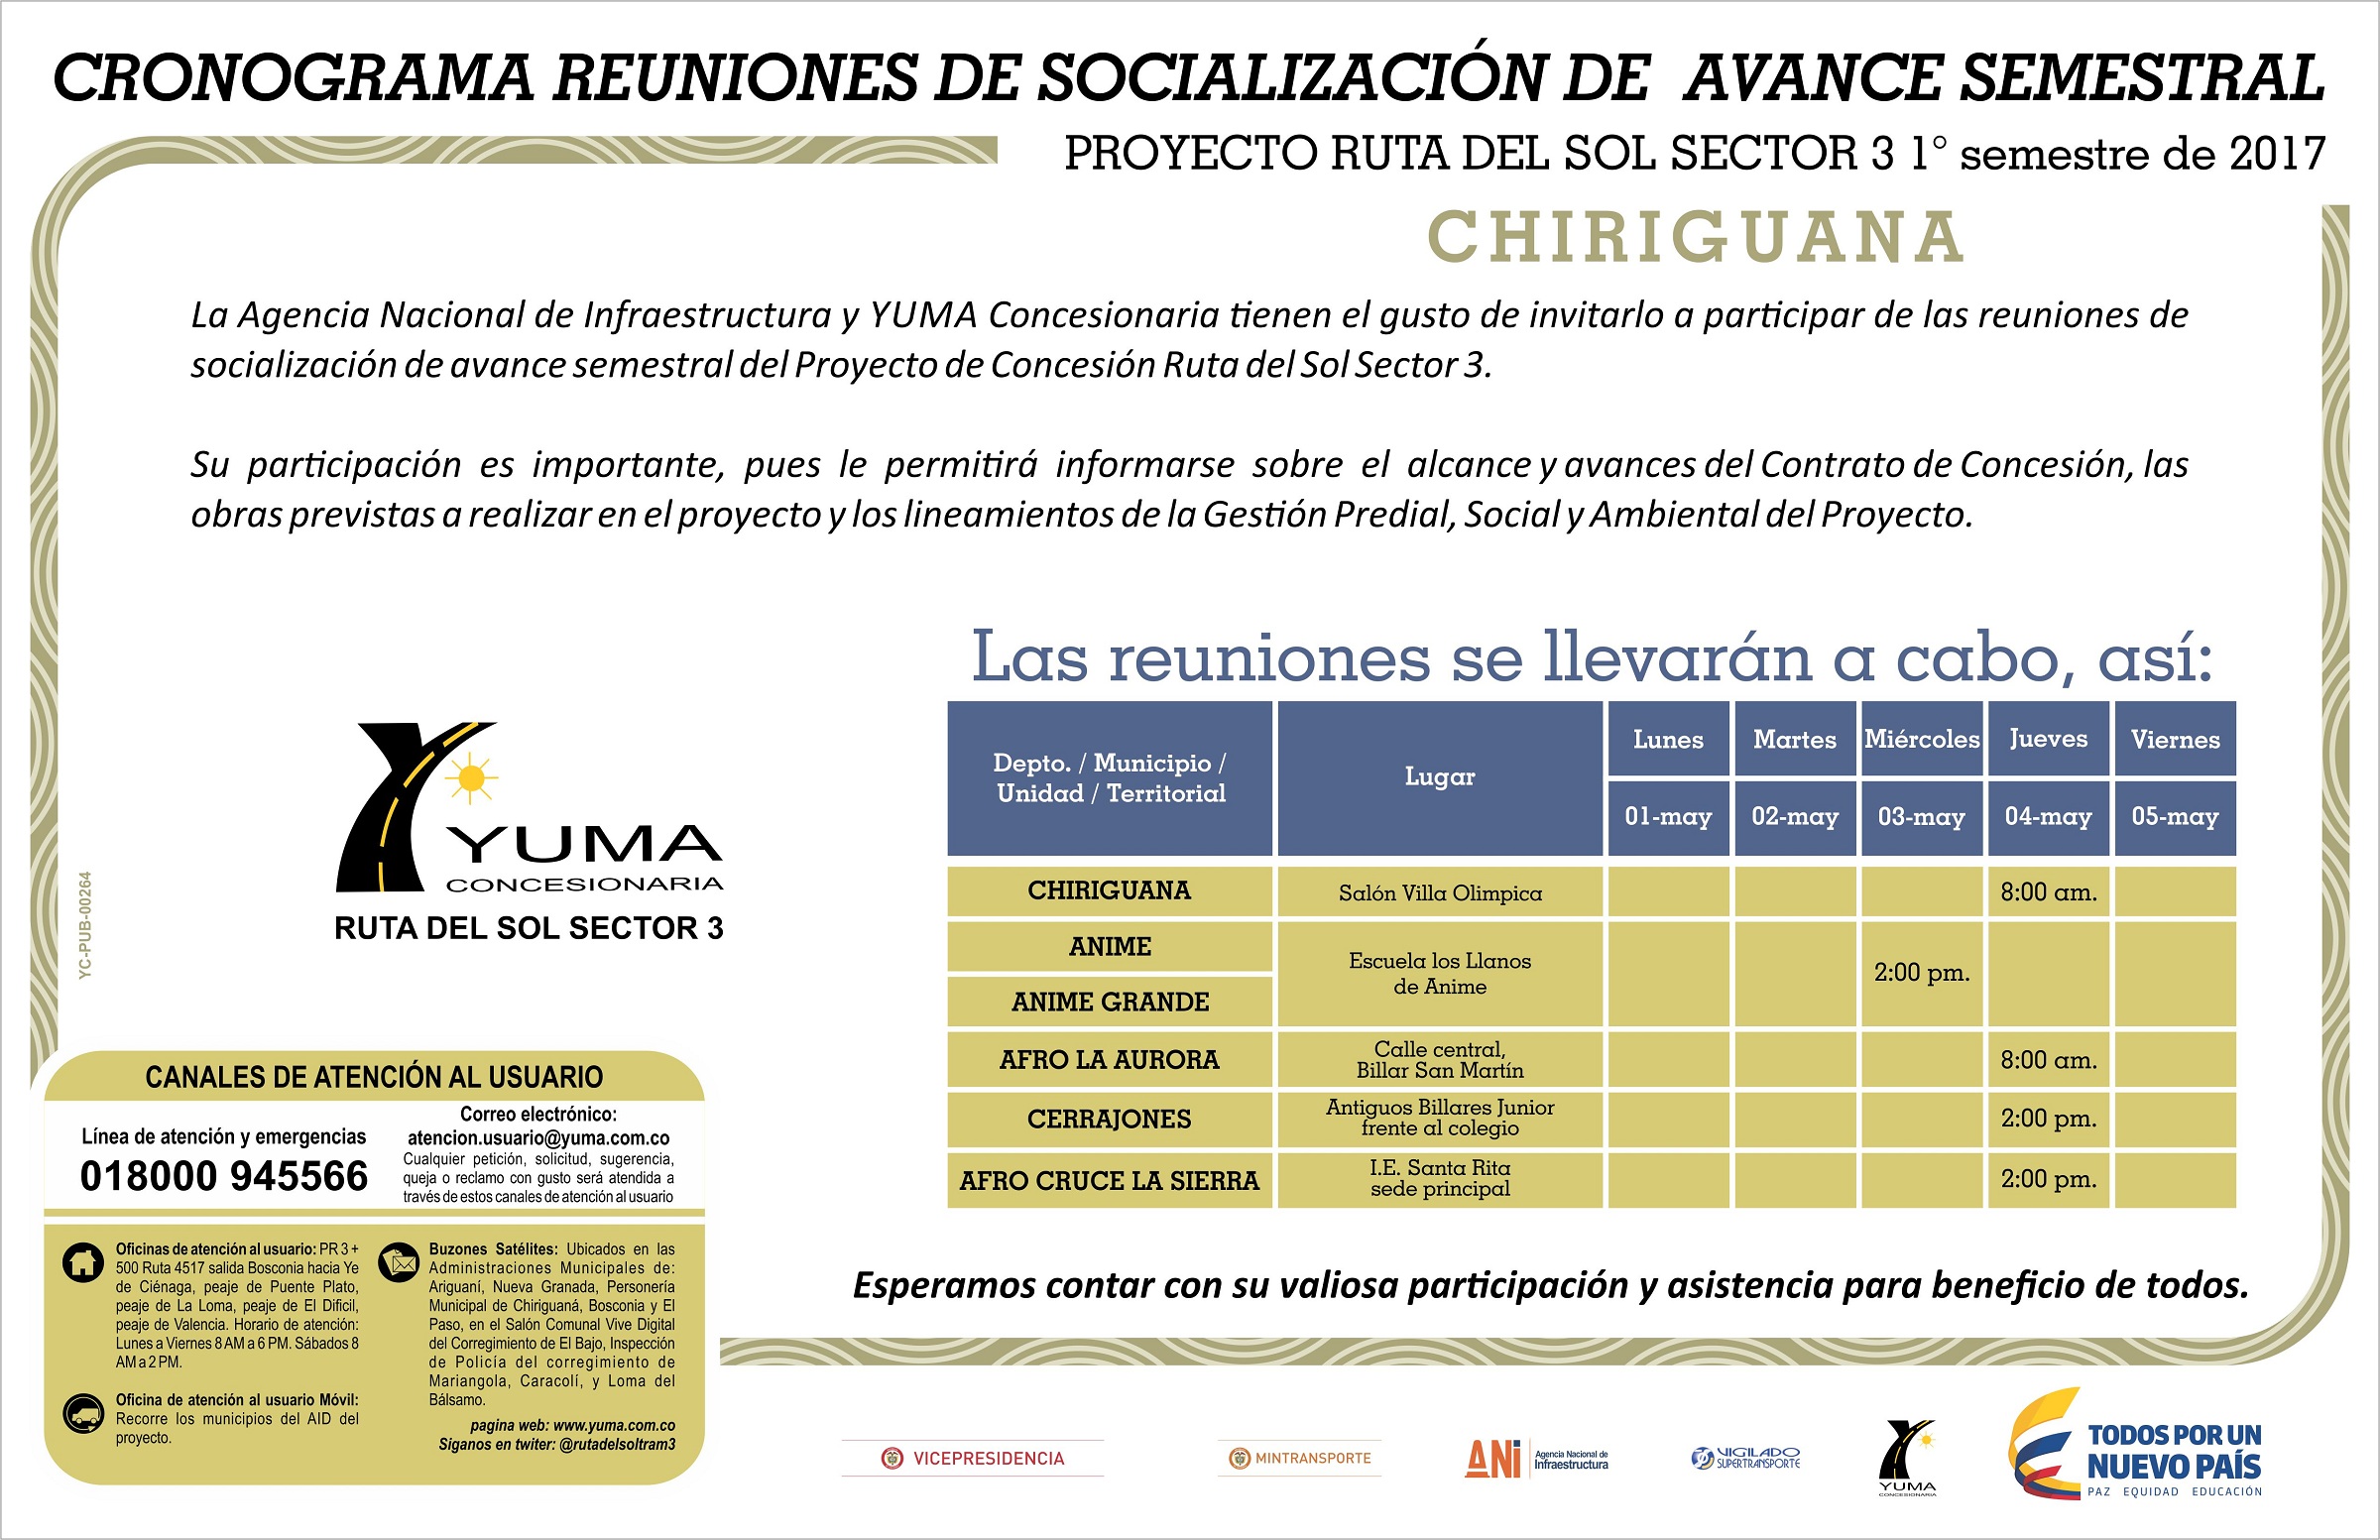 En este momento estás viendo Cronograma reuniones de socialización de avance semestral Chiriguaná